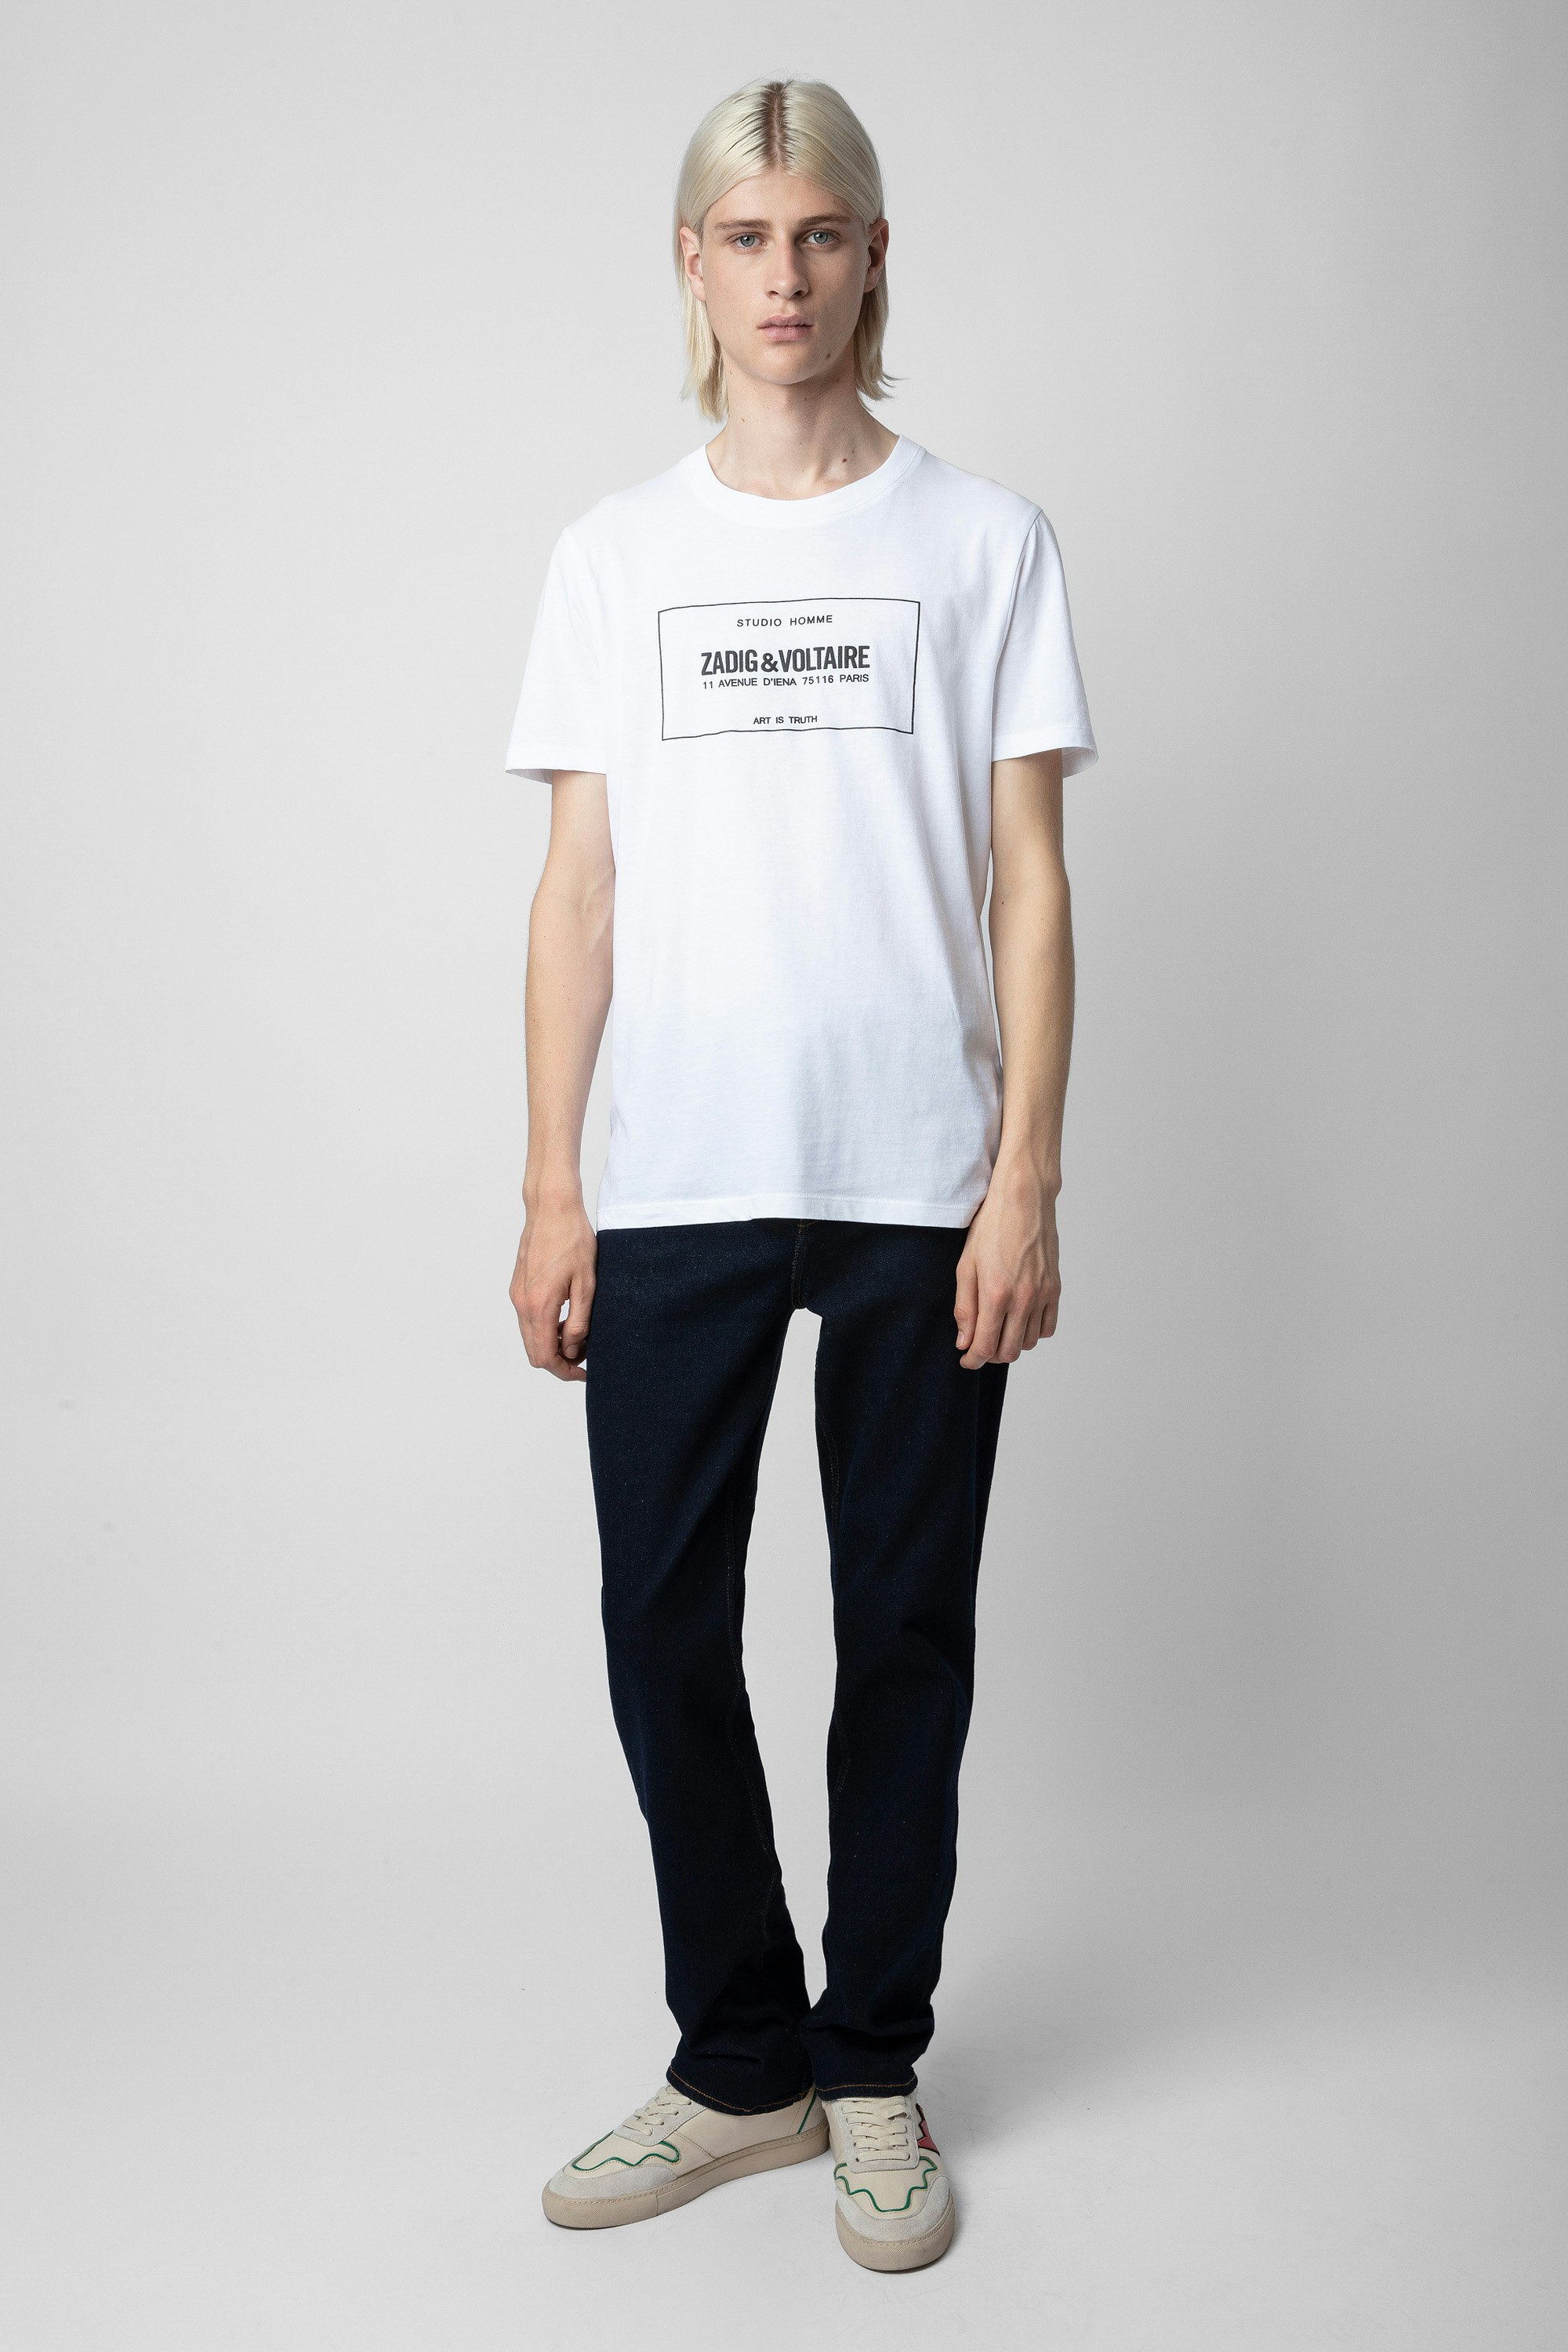 Camiseta Ted - Camiseta blanca de algodón con escudo de la marca para hombre